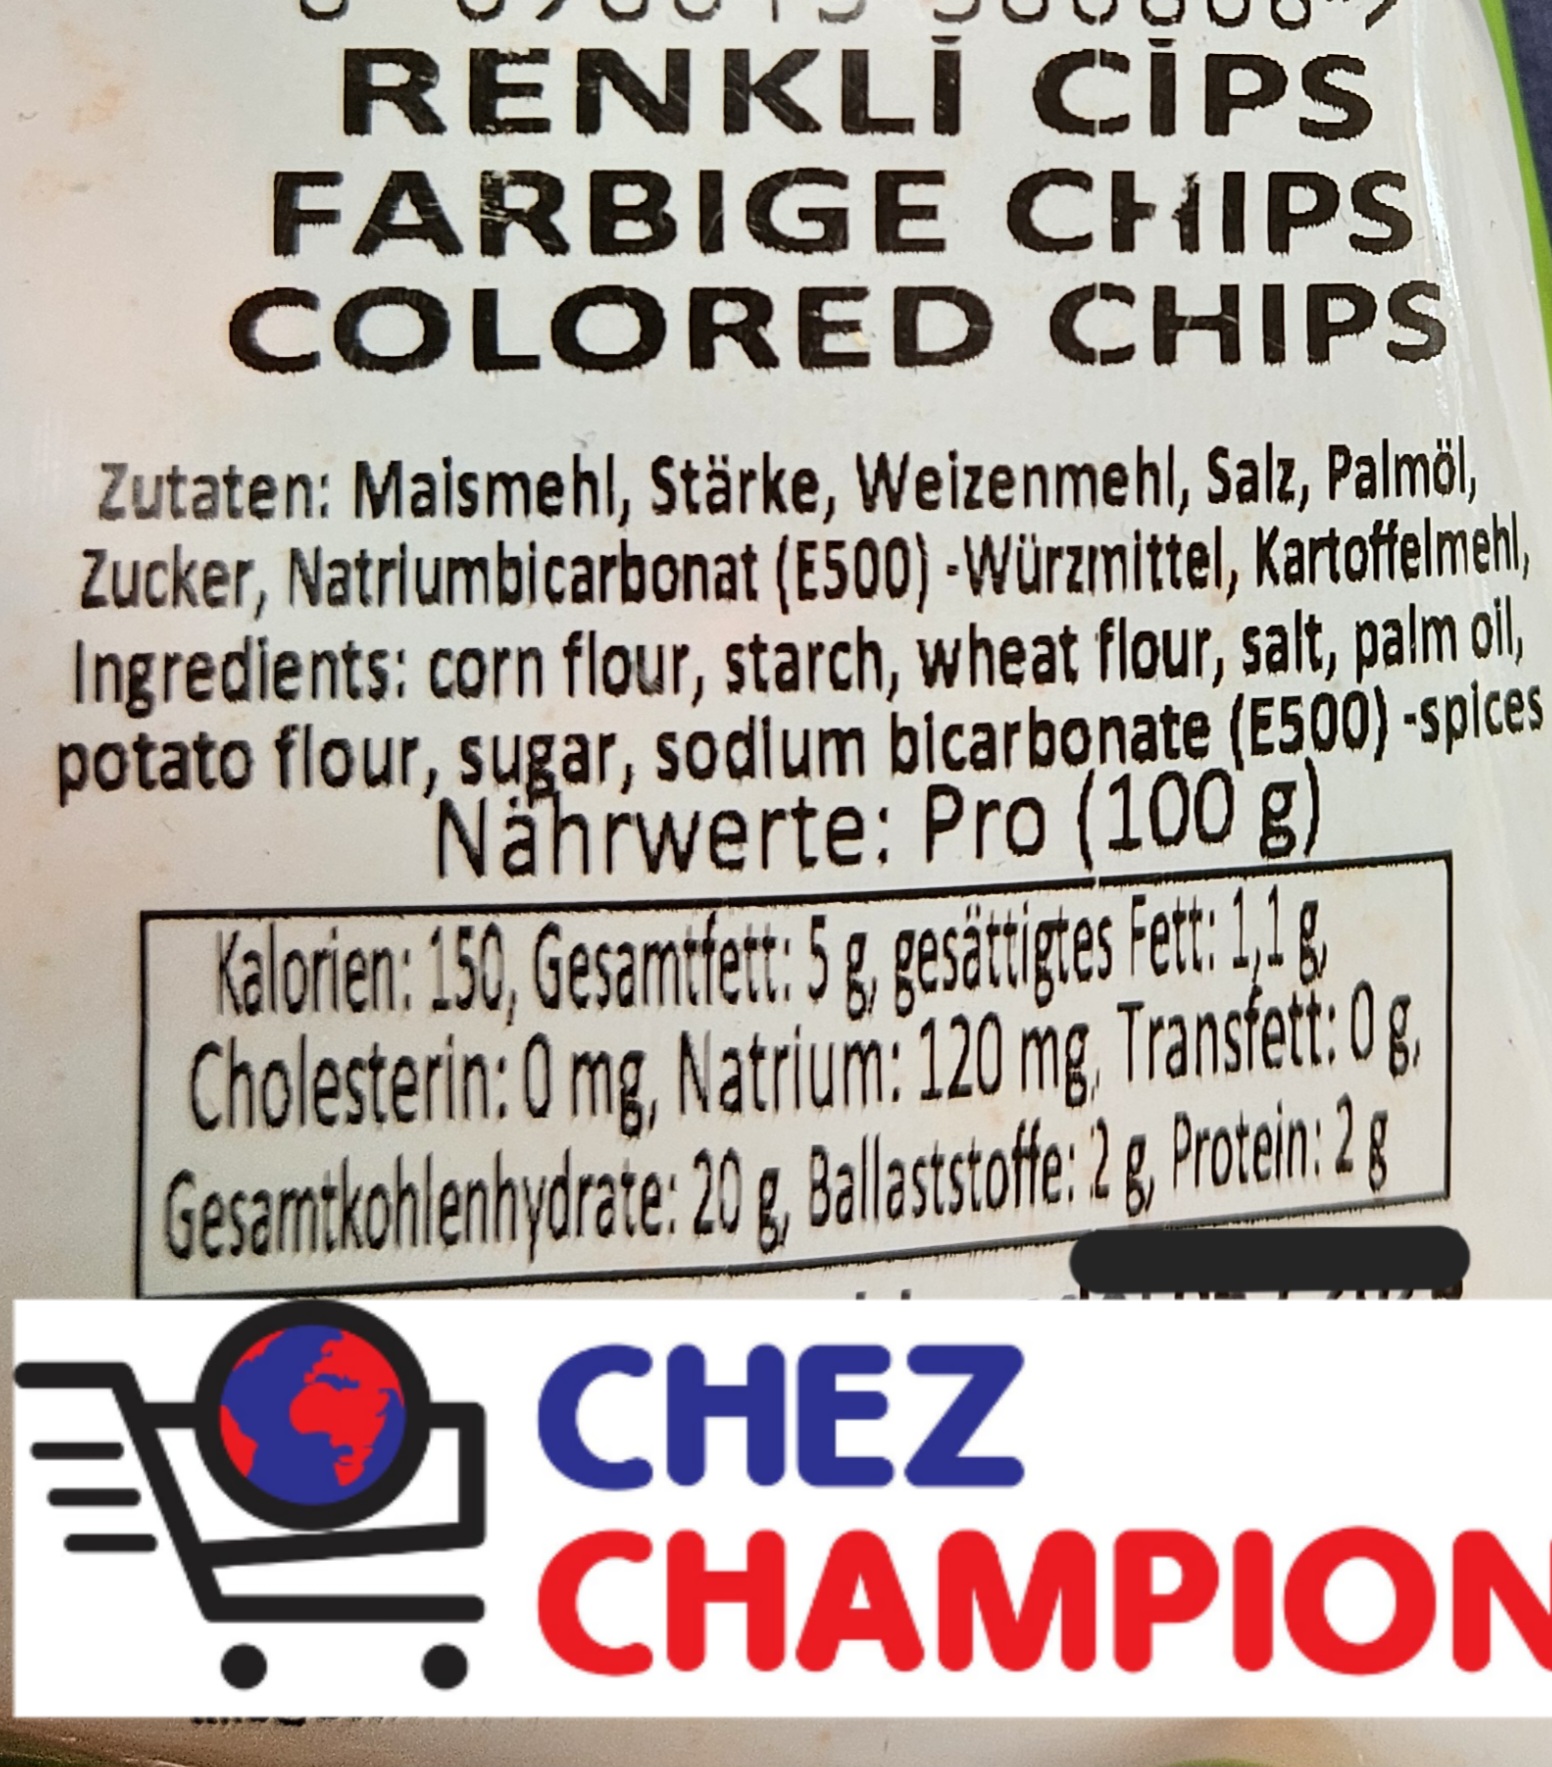 Besler colored corn chips – chips de mais coloré – farbige Maischips – 150g